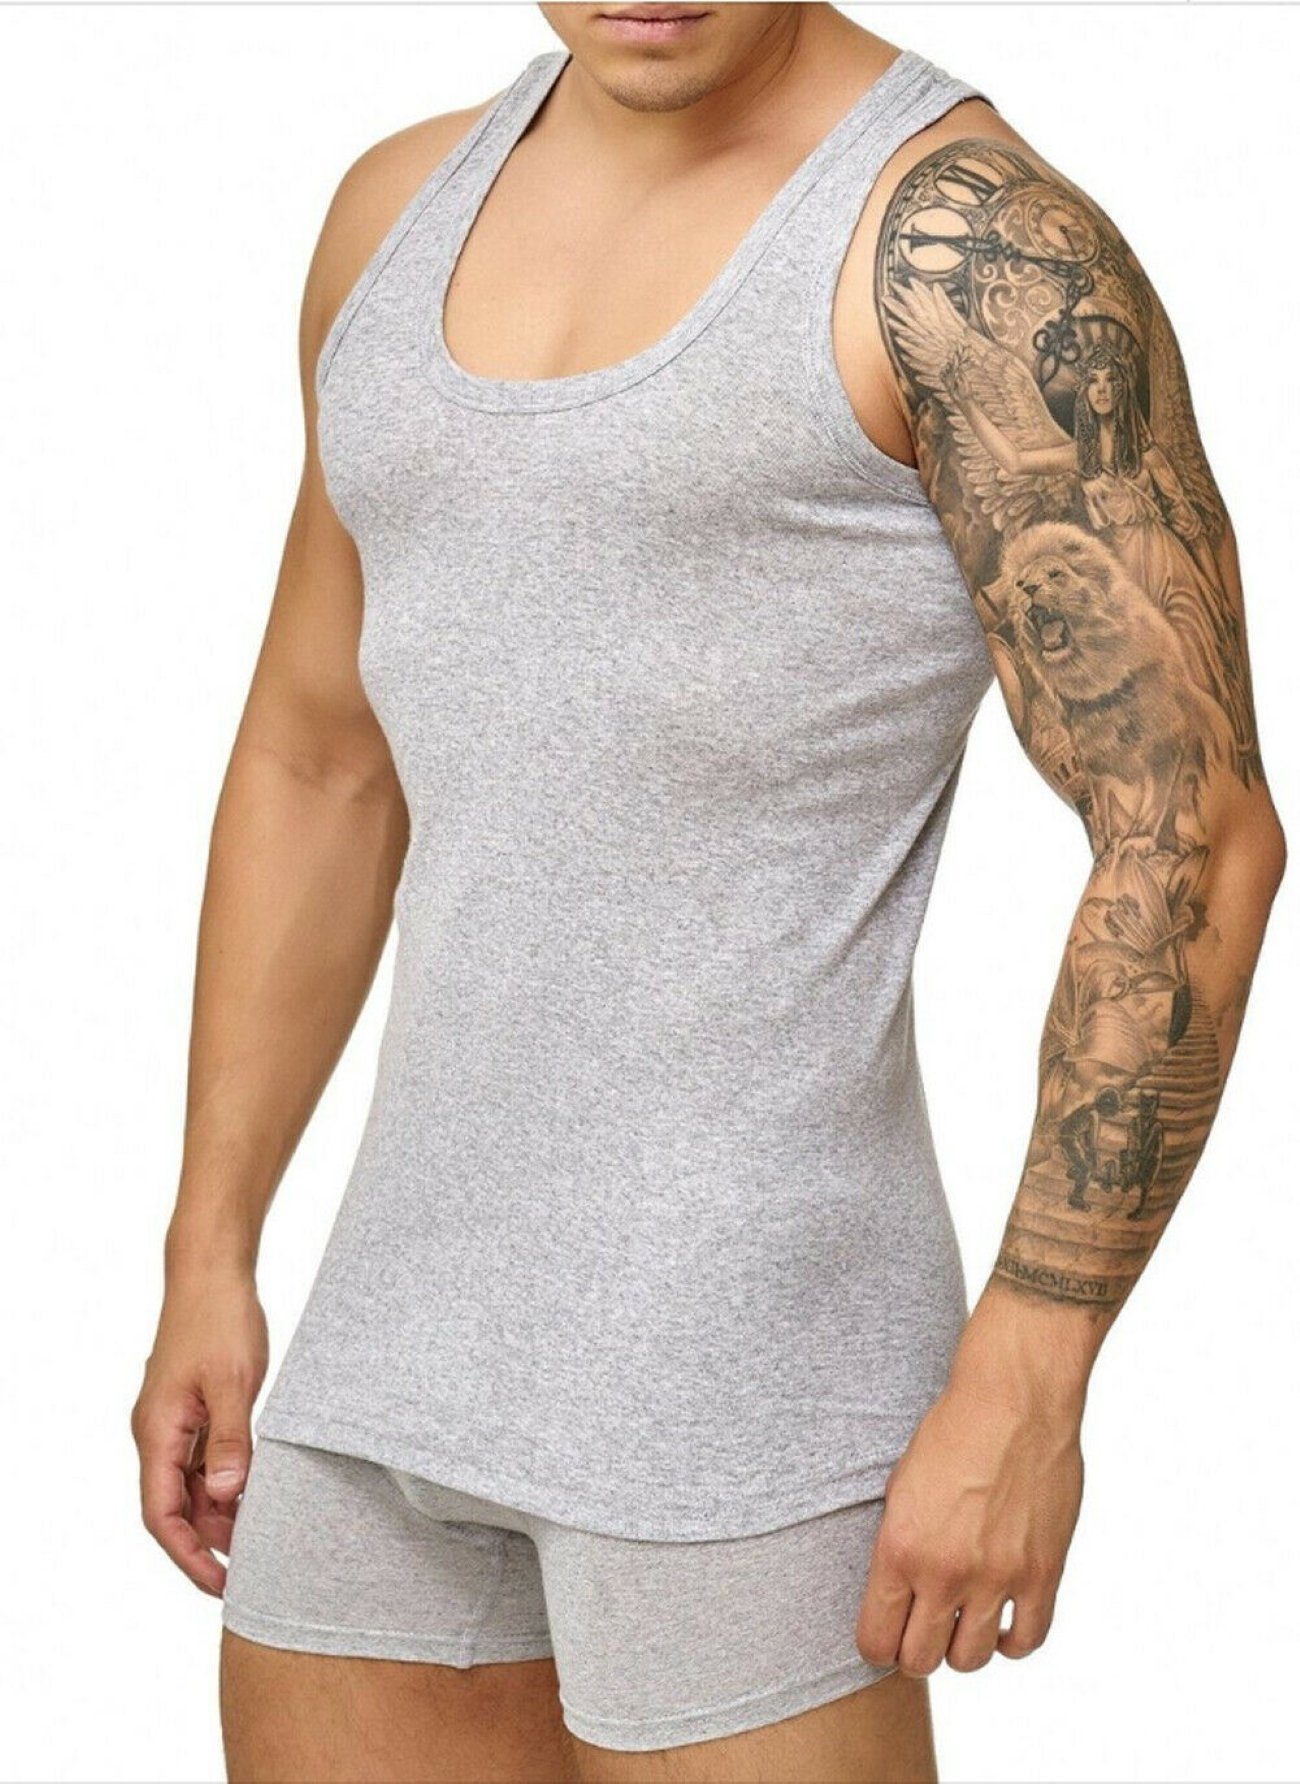 cwonlineshop Unterhemd Tank Top Achselshirt für Herren (Spar-Set, 4-St., 4 Stück) Feinripp aus 100% Baumwolle